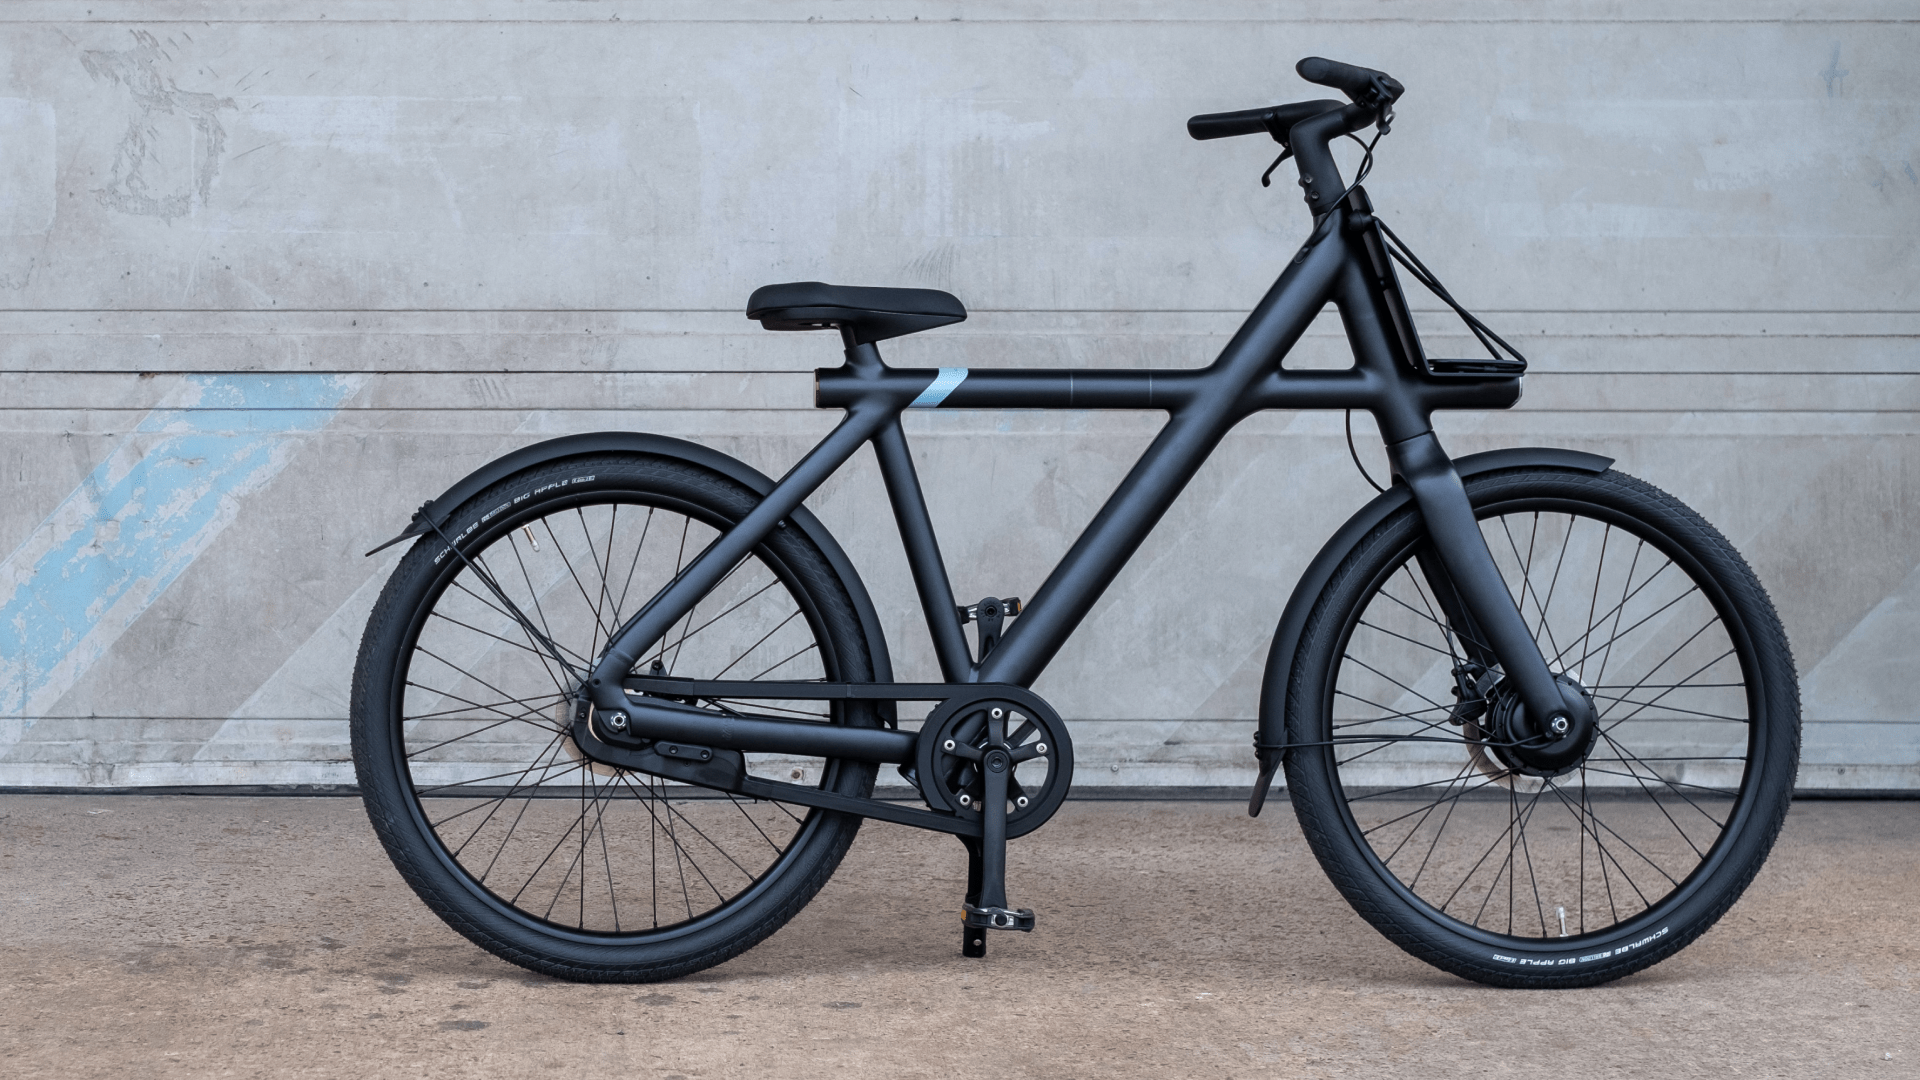 A modern and sleek looking e-bike